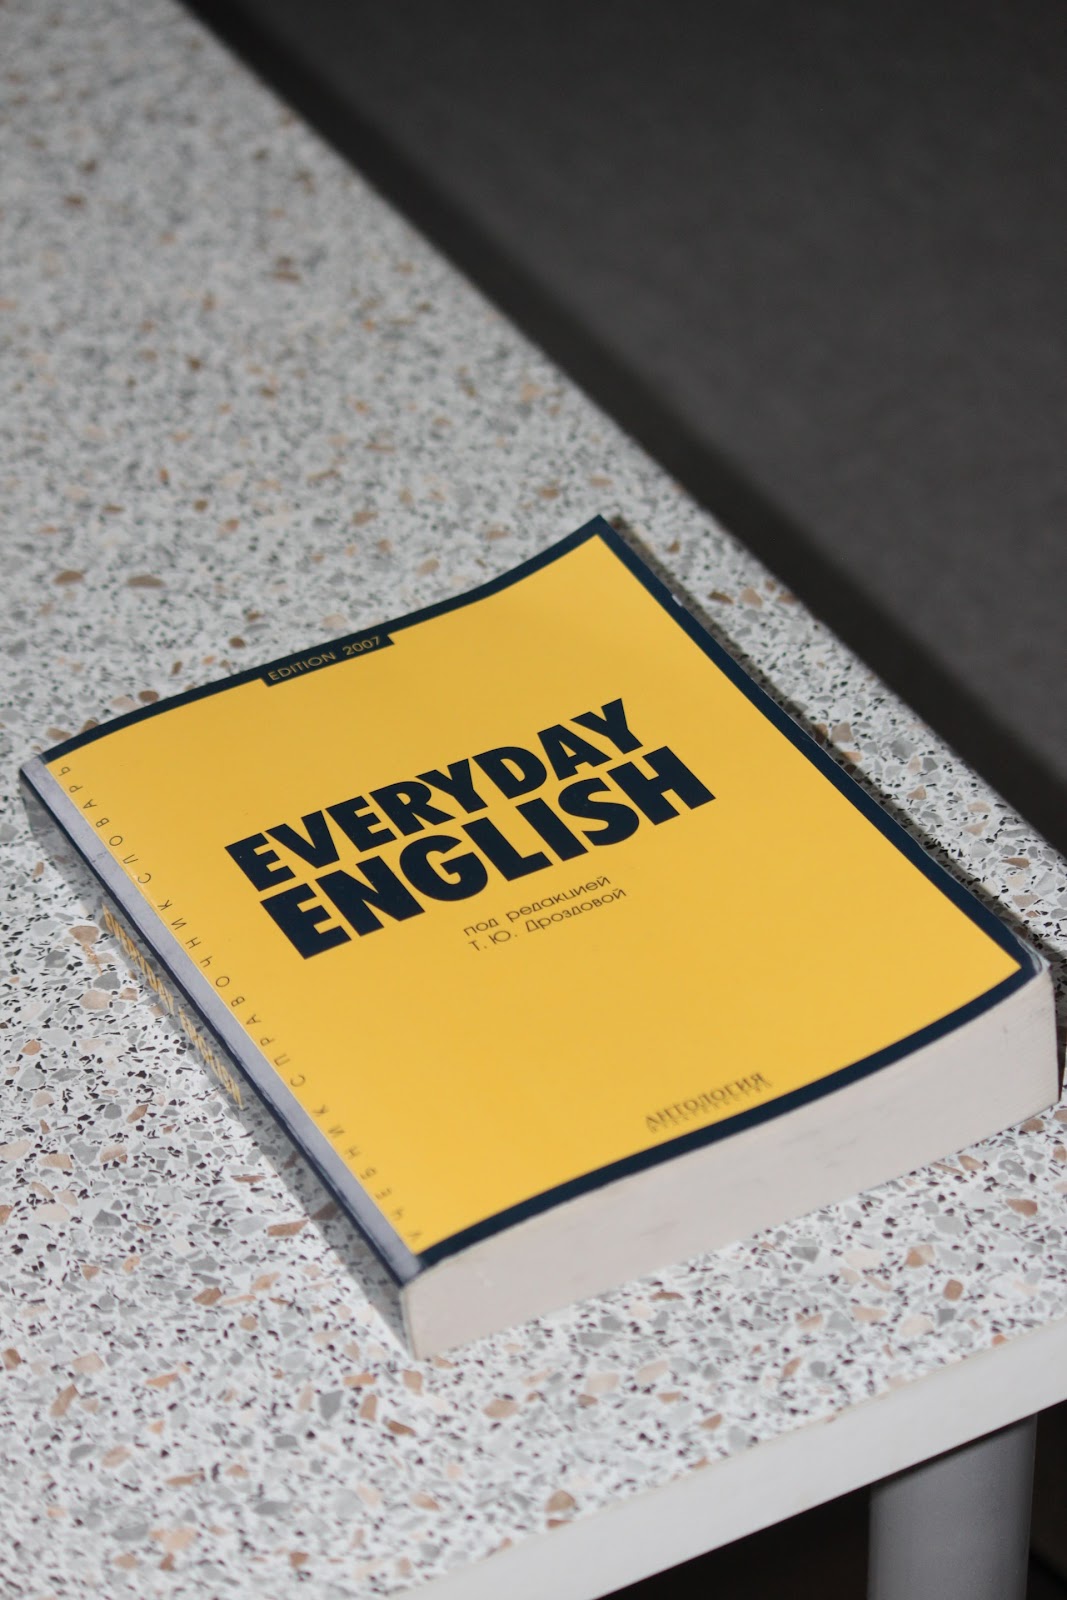 A imagem mostra um livro de capa amarela sob uma mesa de mármore. O livro possui o título “Everyday English”, traduzido como “Inglês diário”. 